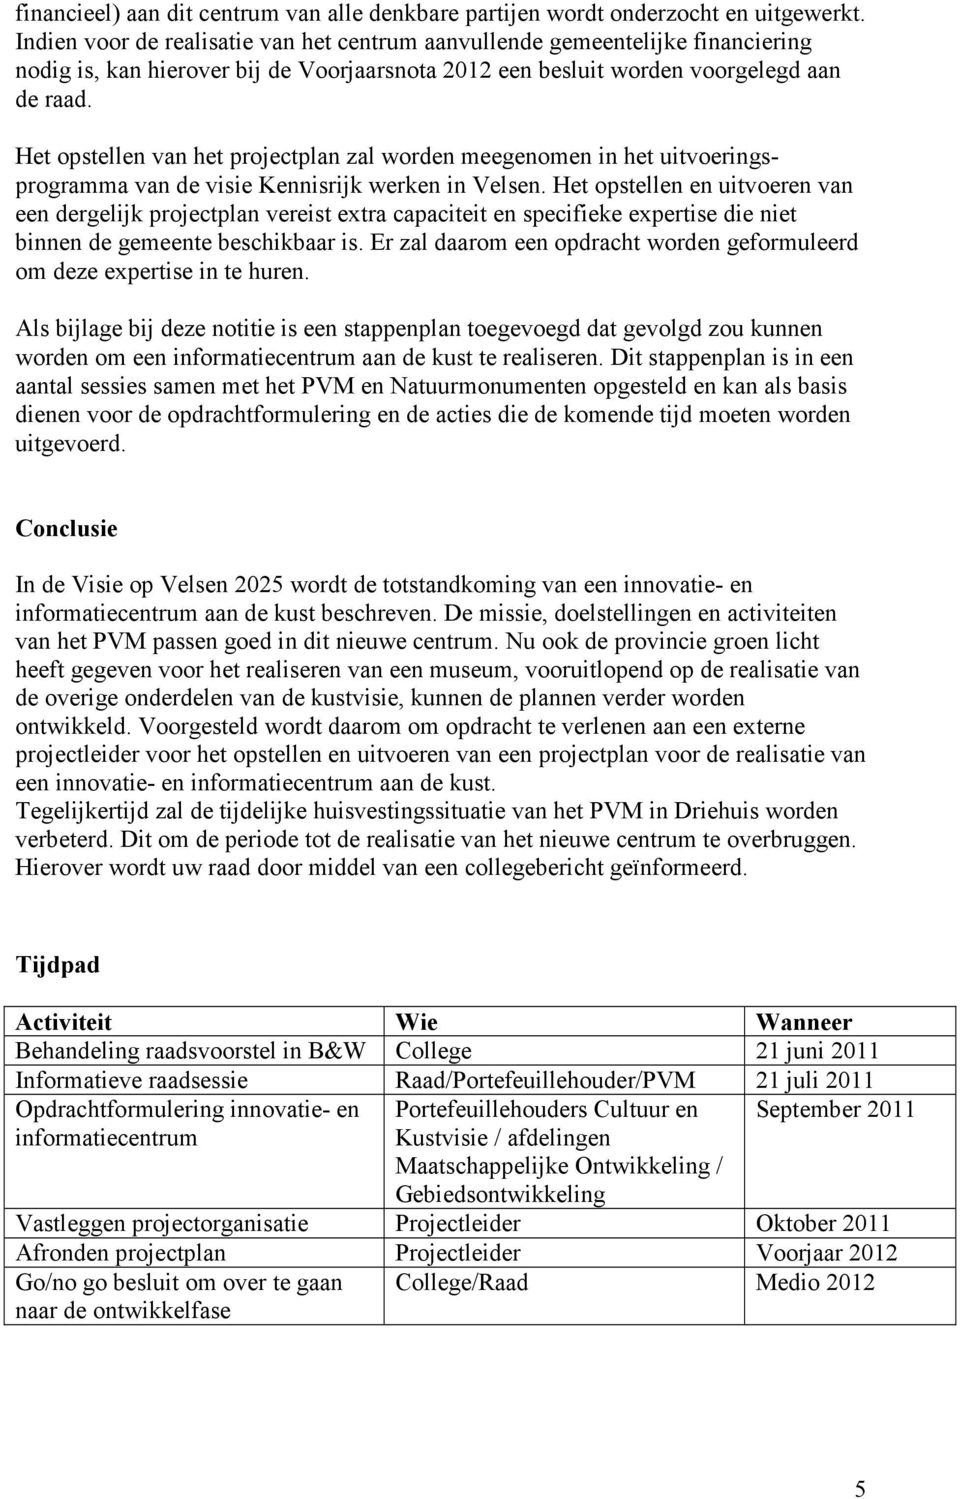 Het opstellen van het projectplan zal worden meegenomen in het uitvoeringsprogramma van de visie Kennisrijk werken in Velsen.